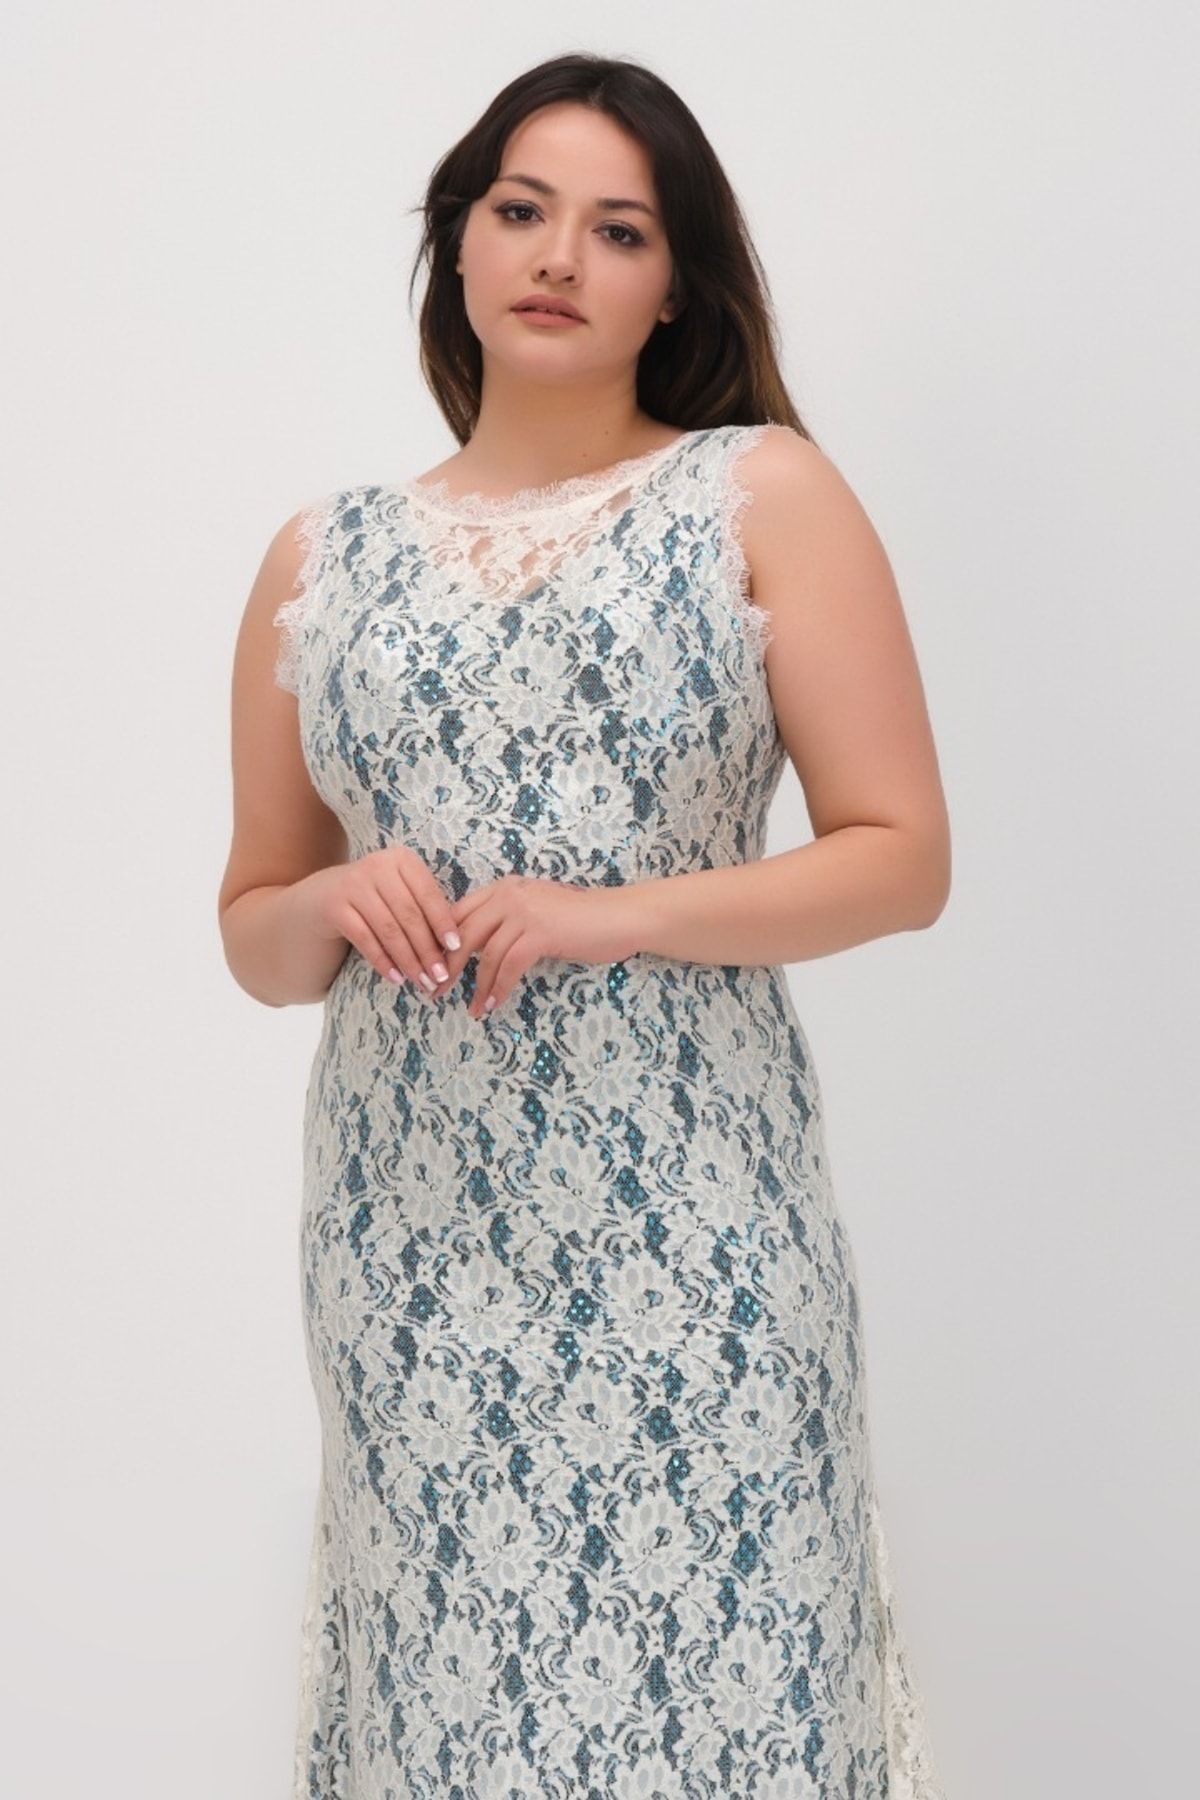 Plus Size Formal Dresses | Avenue.com